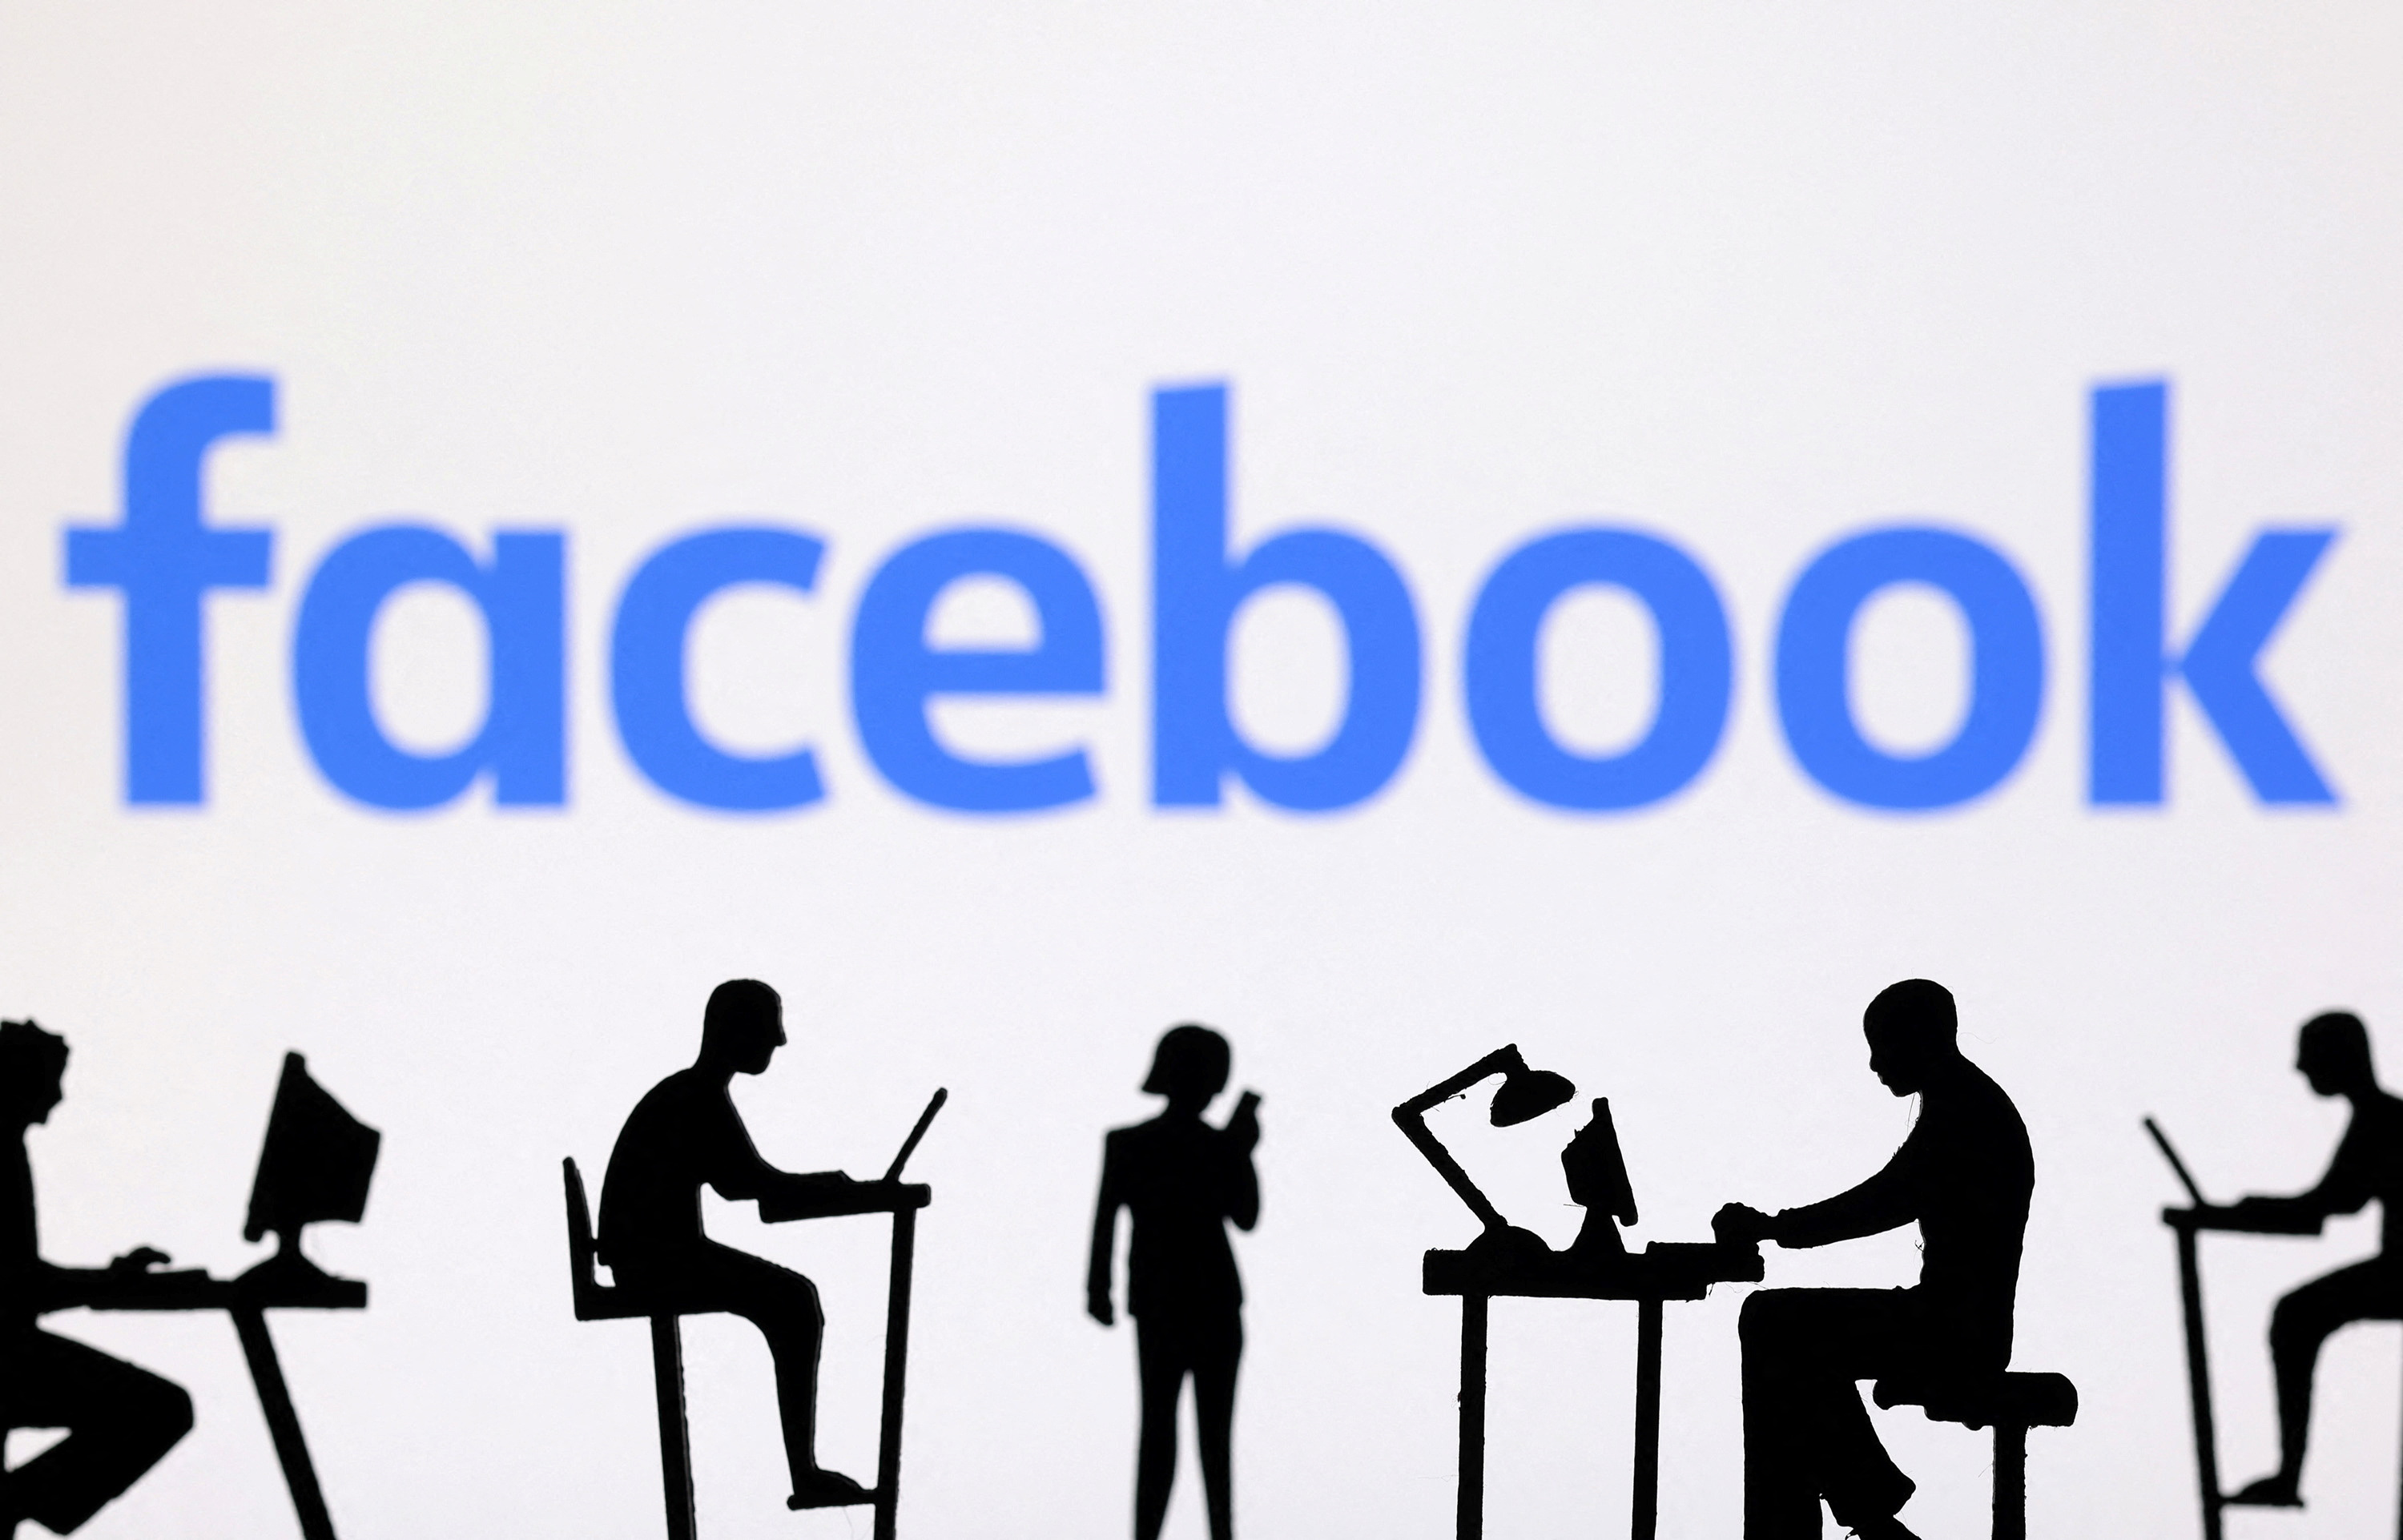 Illustration shows Facebook logo